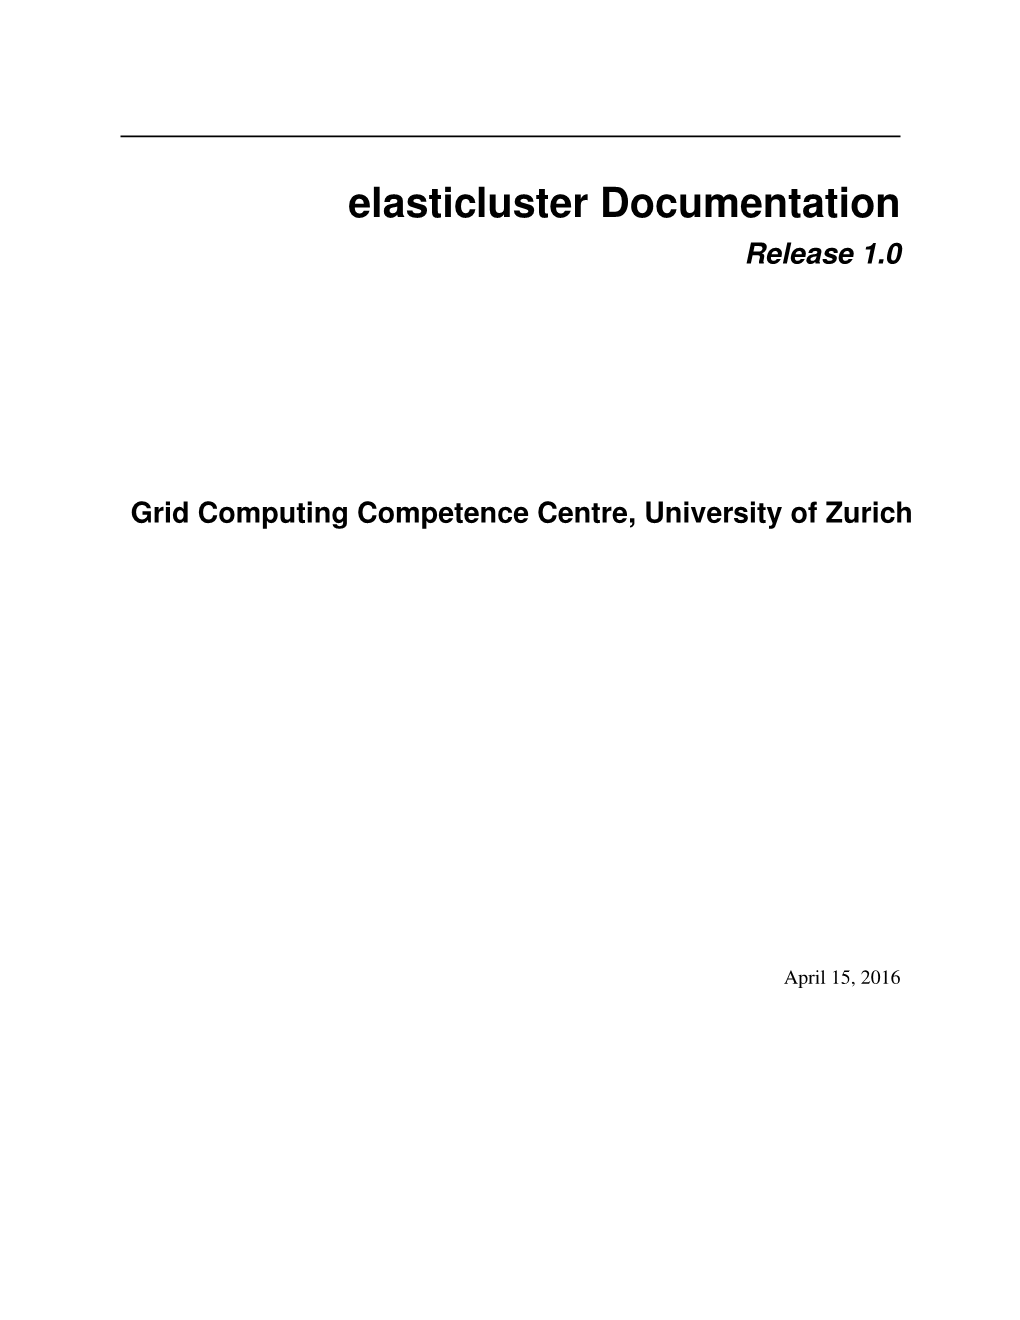 Elasticluster Documentation Release 1.0